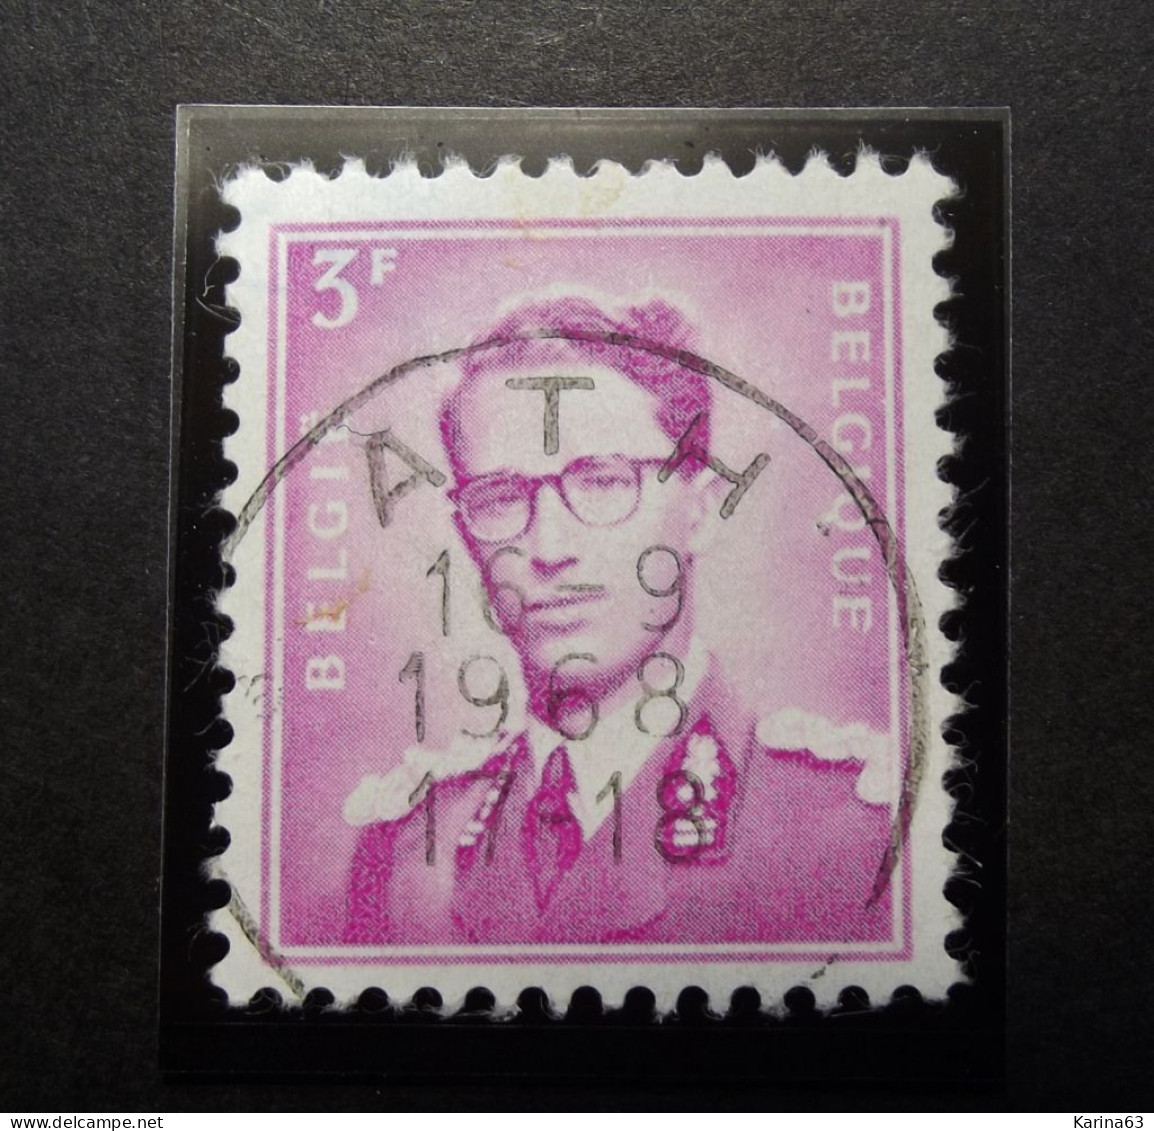 Belgie Belgique - 1958 -  OPB/COB  N° 1067 - 3 F  - Obl. Central  ATH - 1968 - Used Stamps